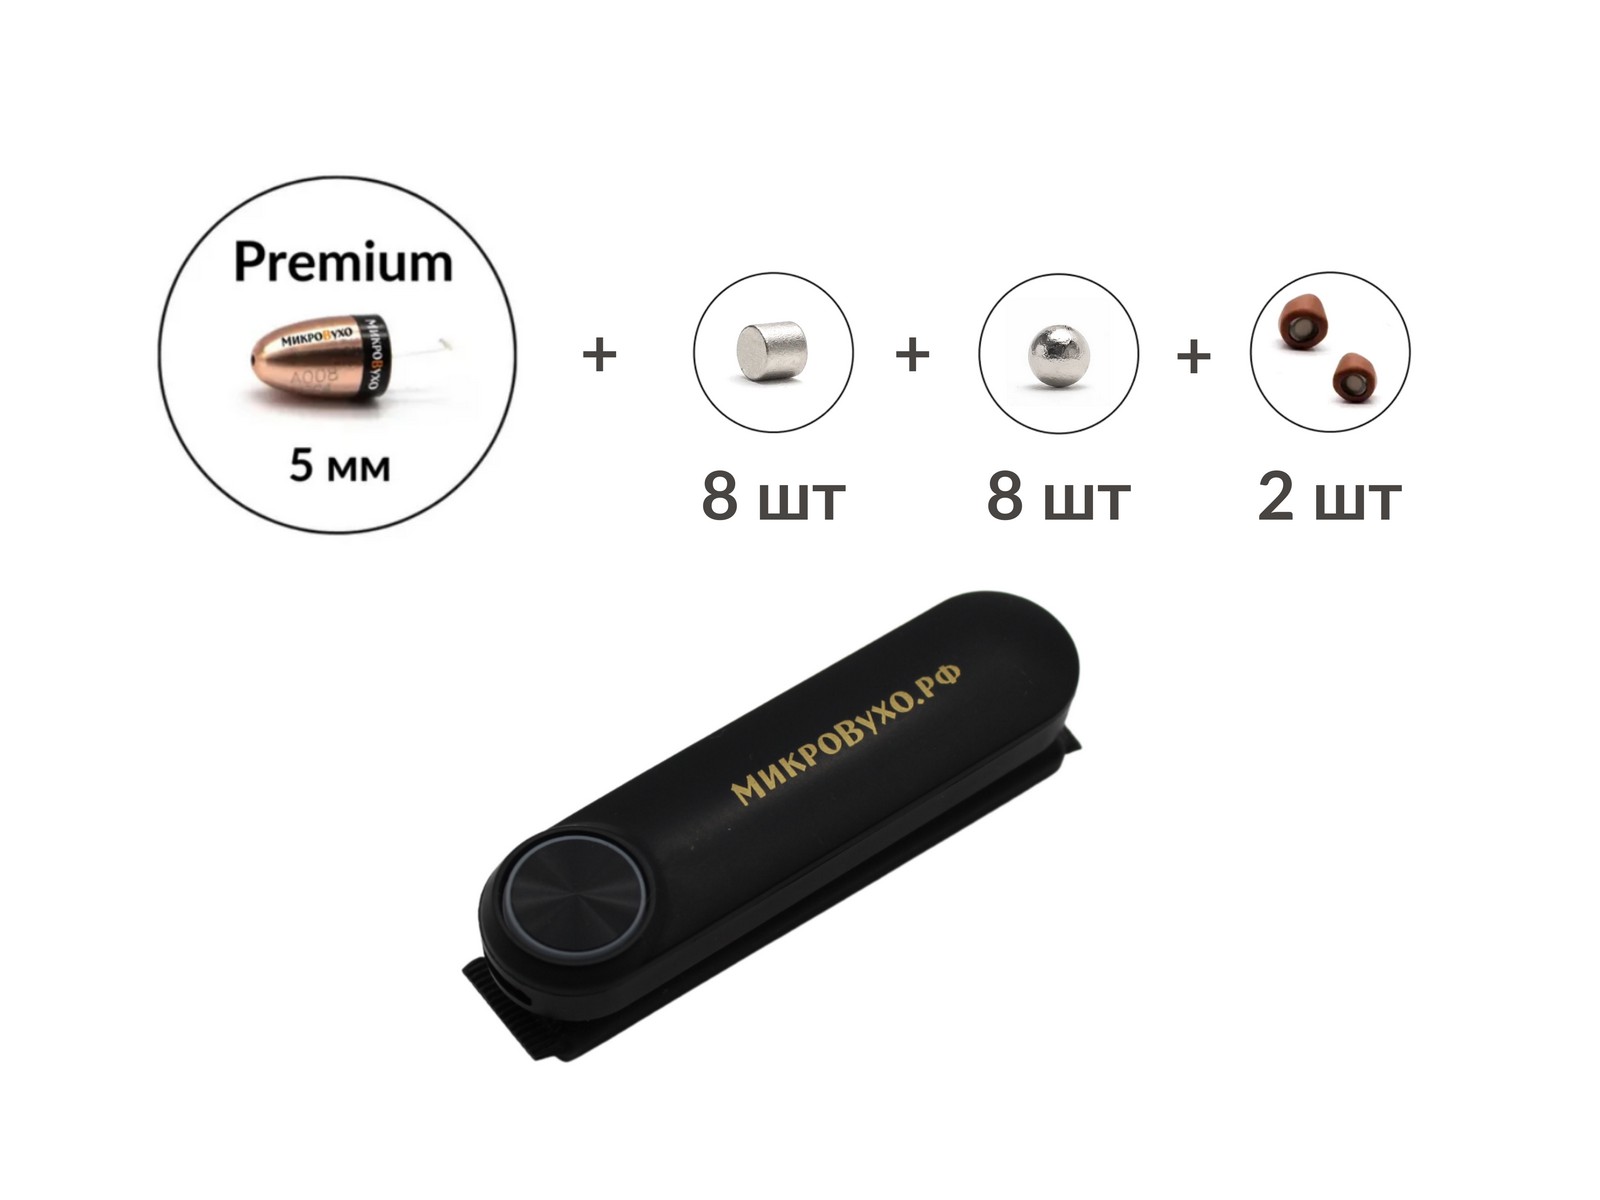 Универсальная гарнитура Bluetooth Box Standard Plus с капсулой Premium и магнитами 2 мм - изображение 15